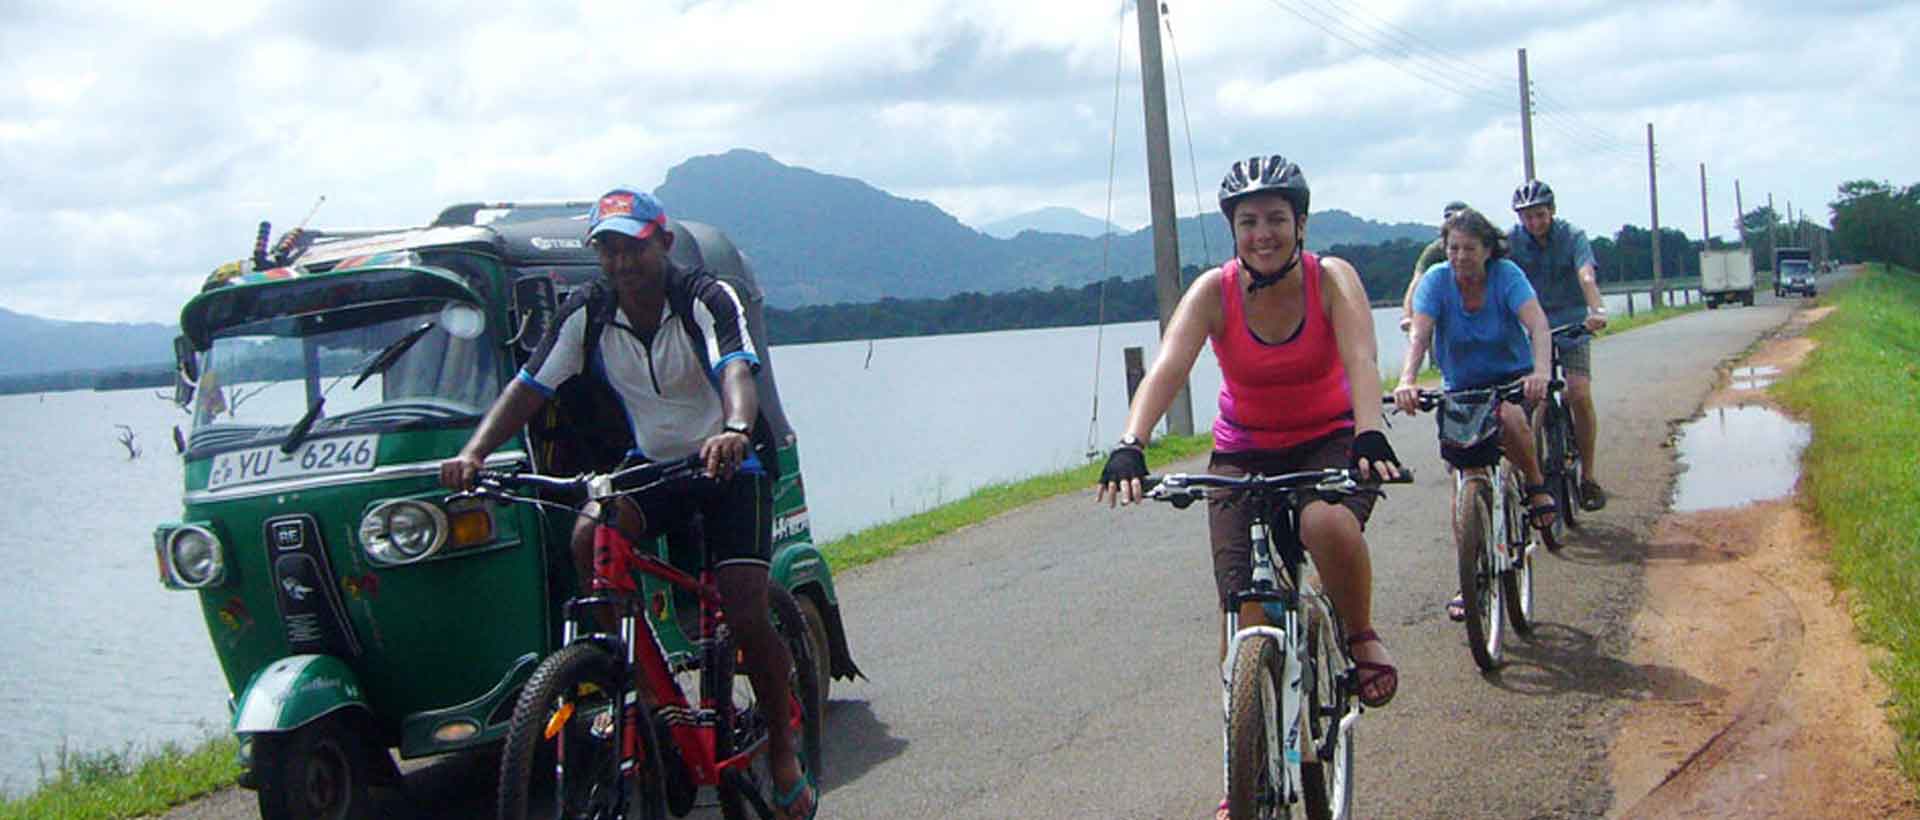 mit dem Fahrrad vorbei an Tuk-Tuk kommt bei der Radreise in Sri Lanka ofter